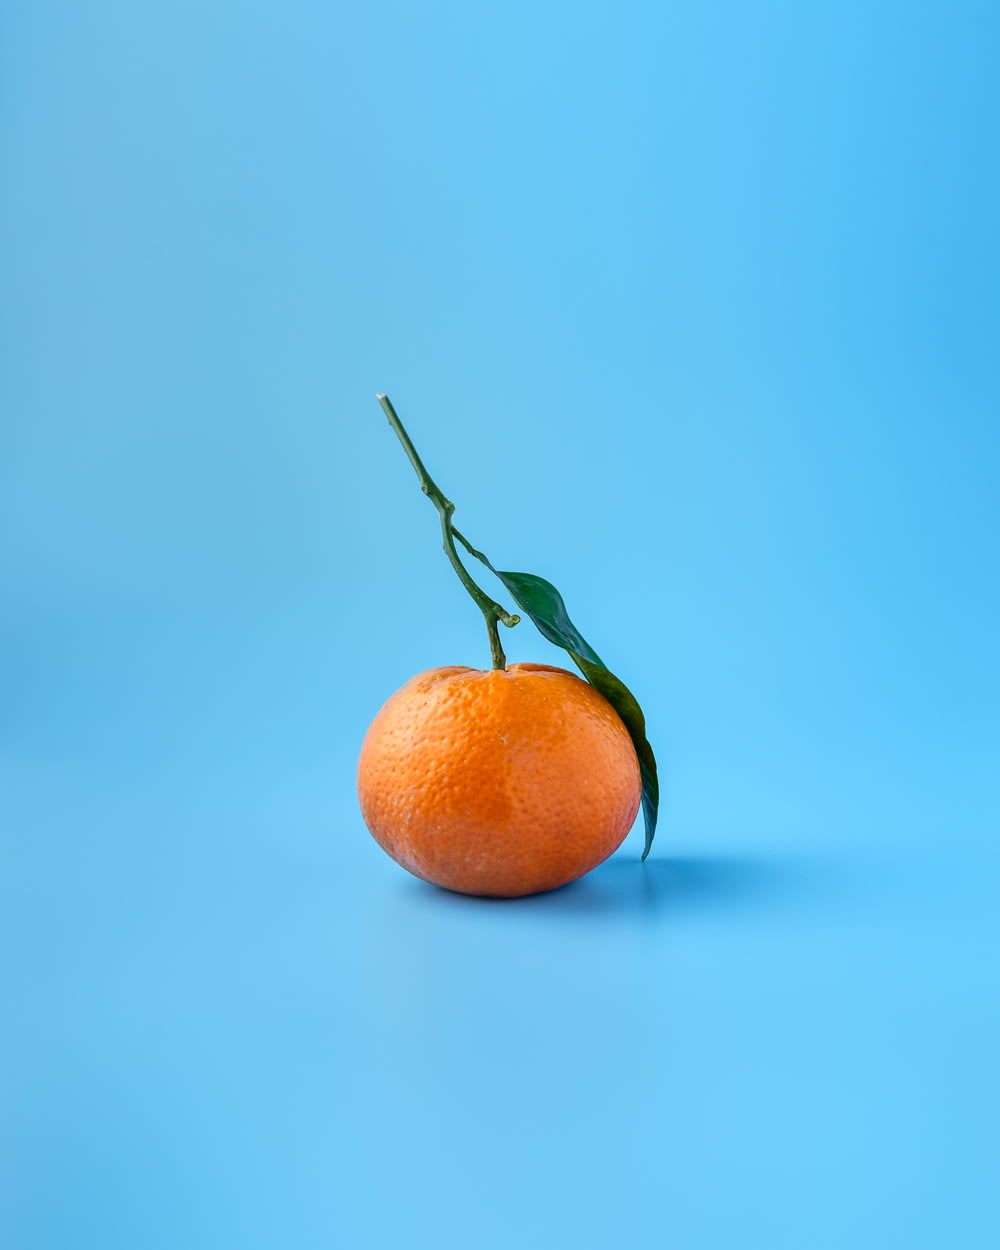 Orangenfrucht